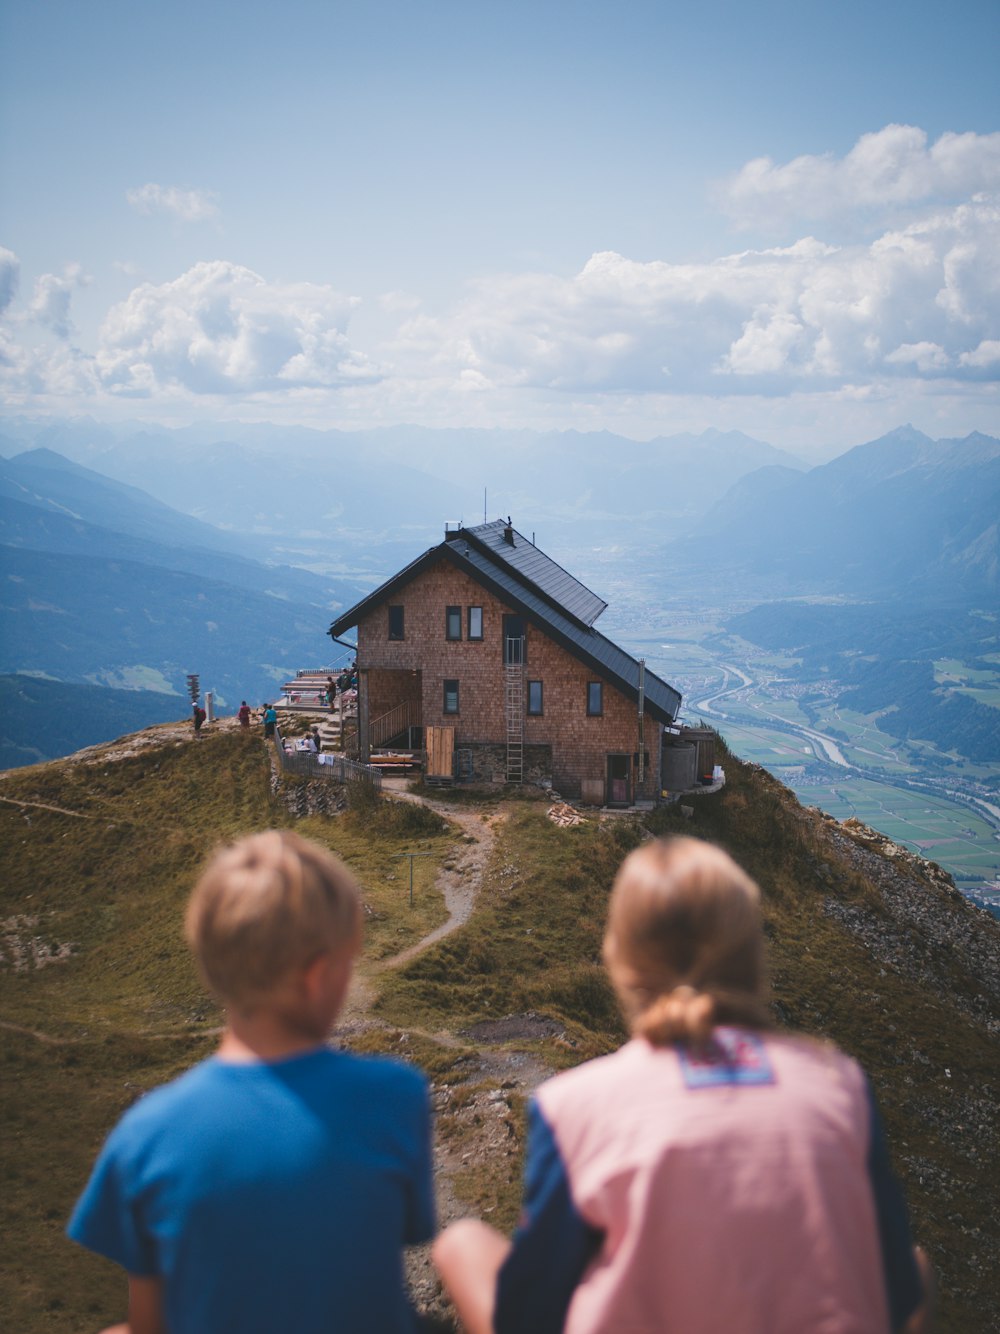 Junge und Mädchen sitzen tagsüber auf einer Klippe mit Blick auf das Haus